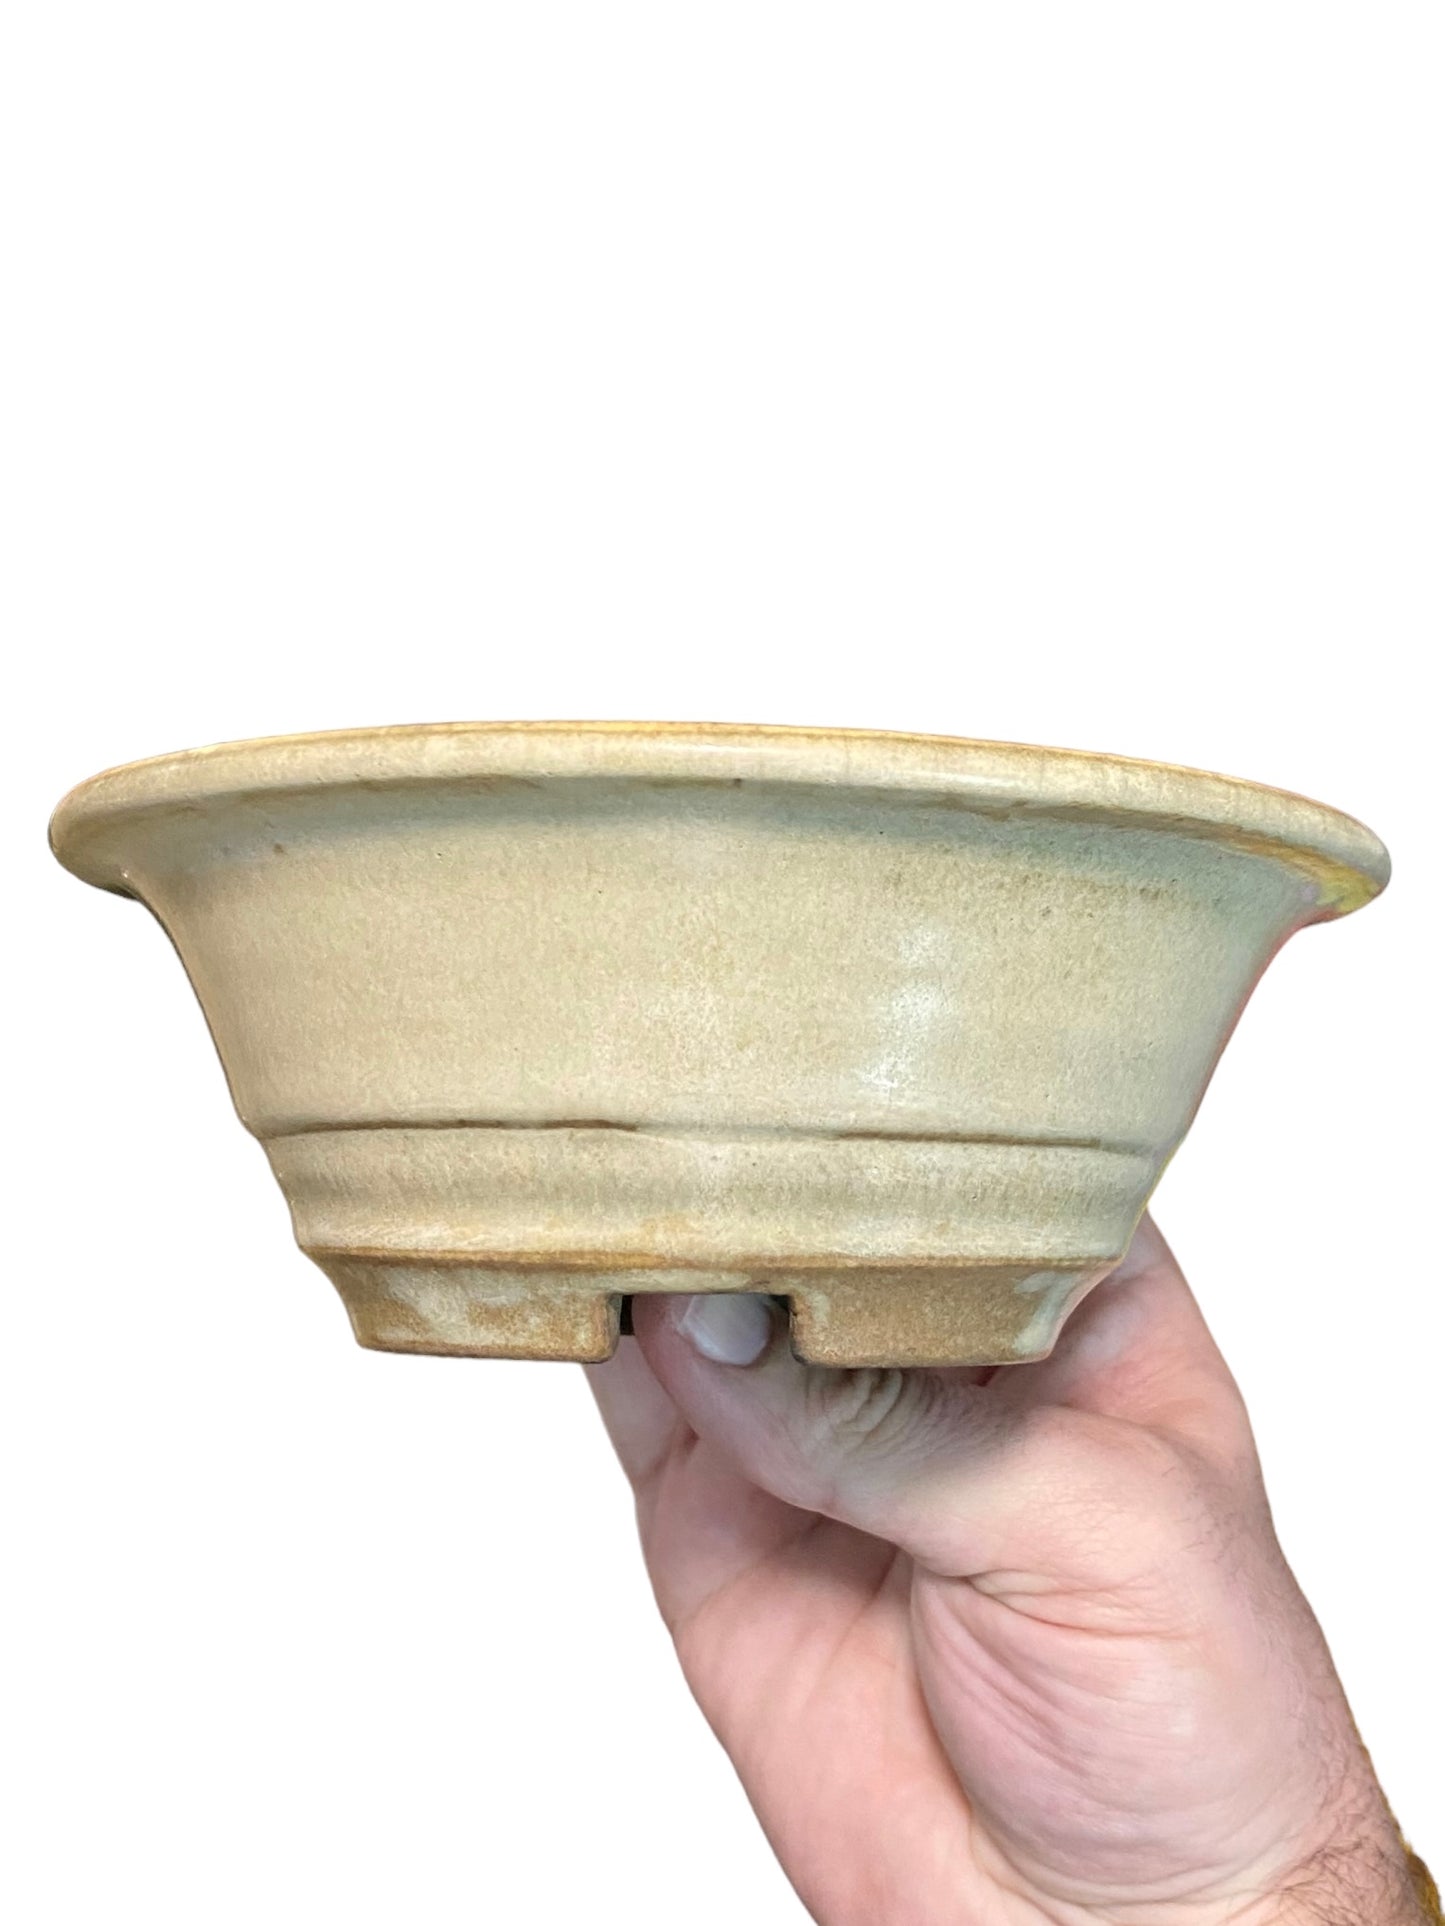 Koyo - Rare Older Bowl Bonsai or Accent Pot